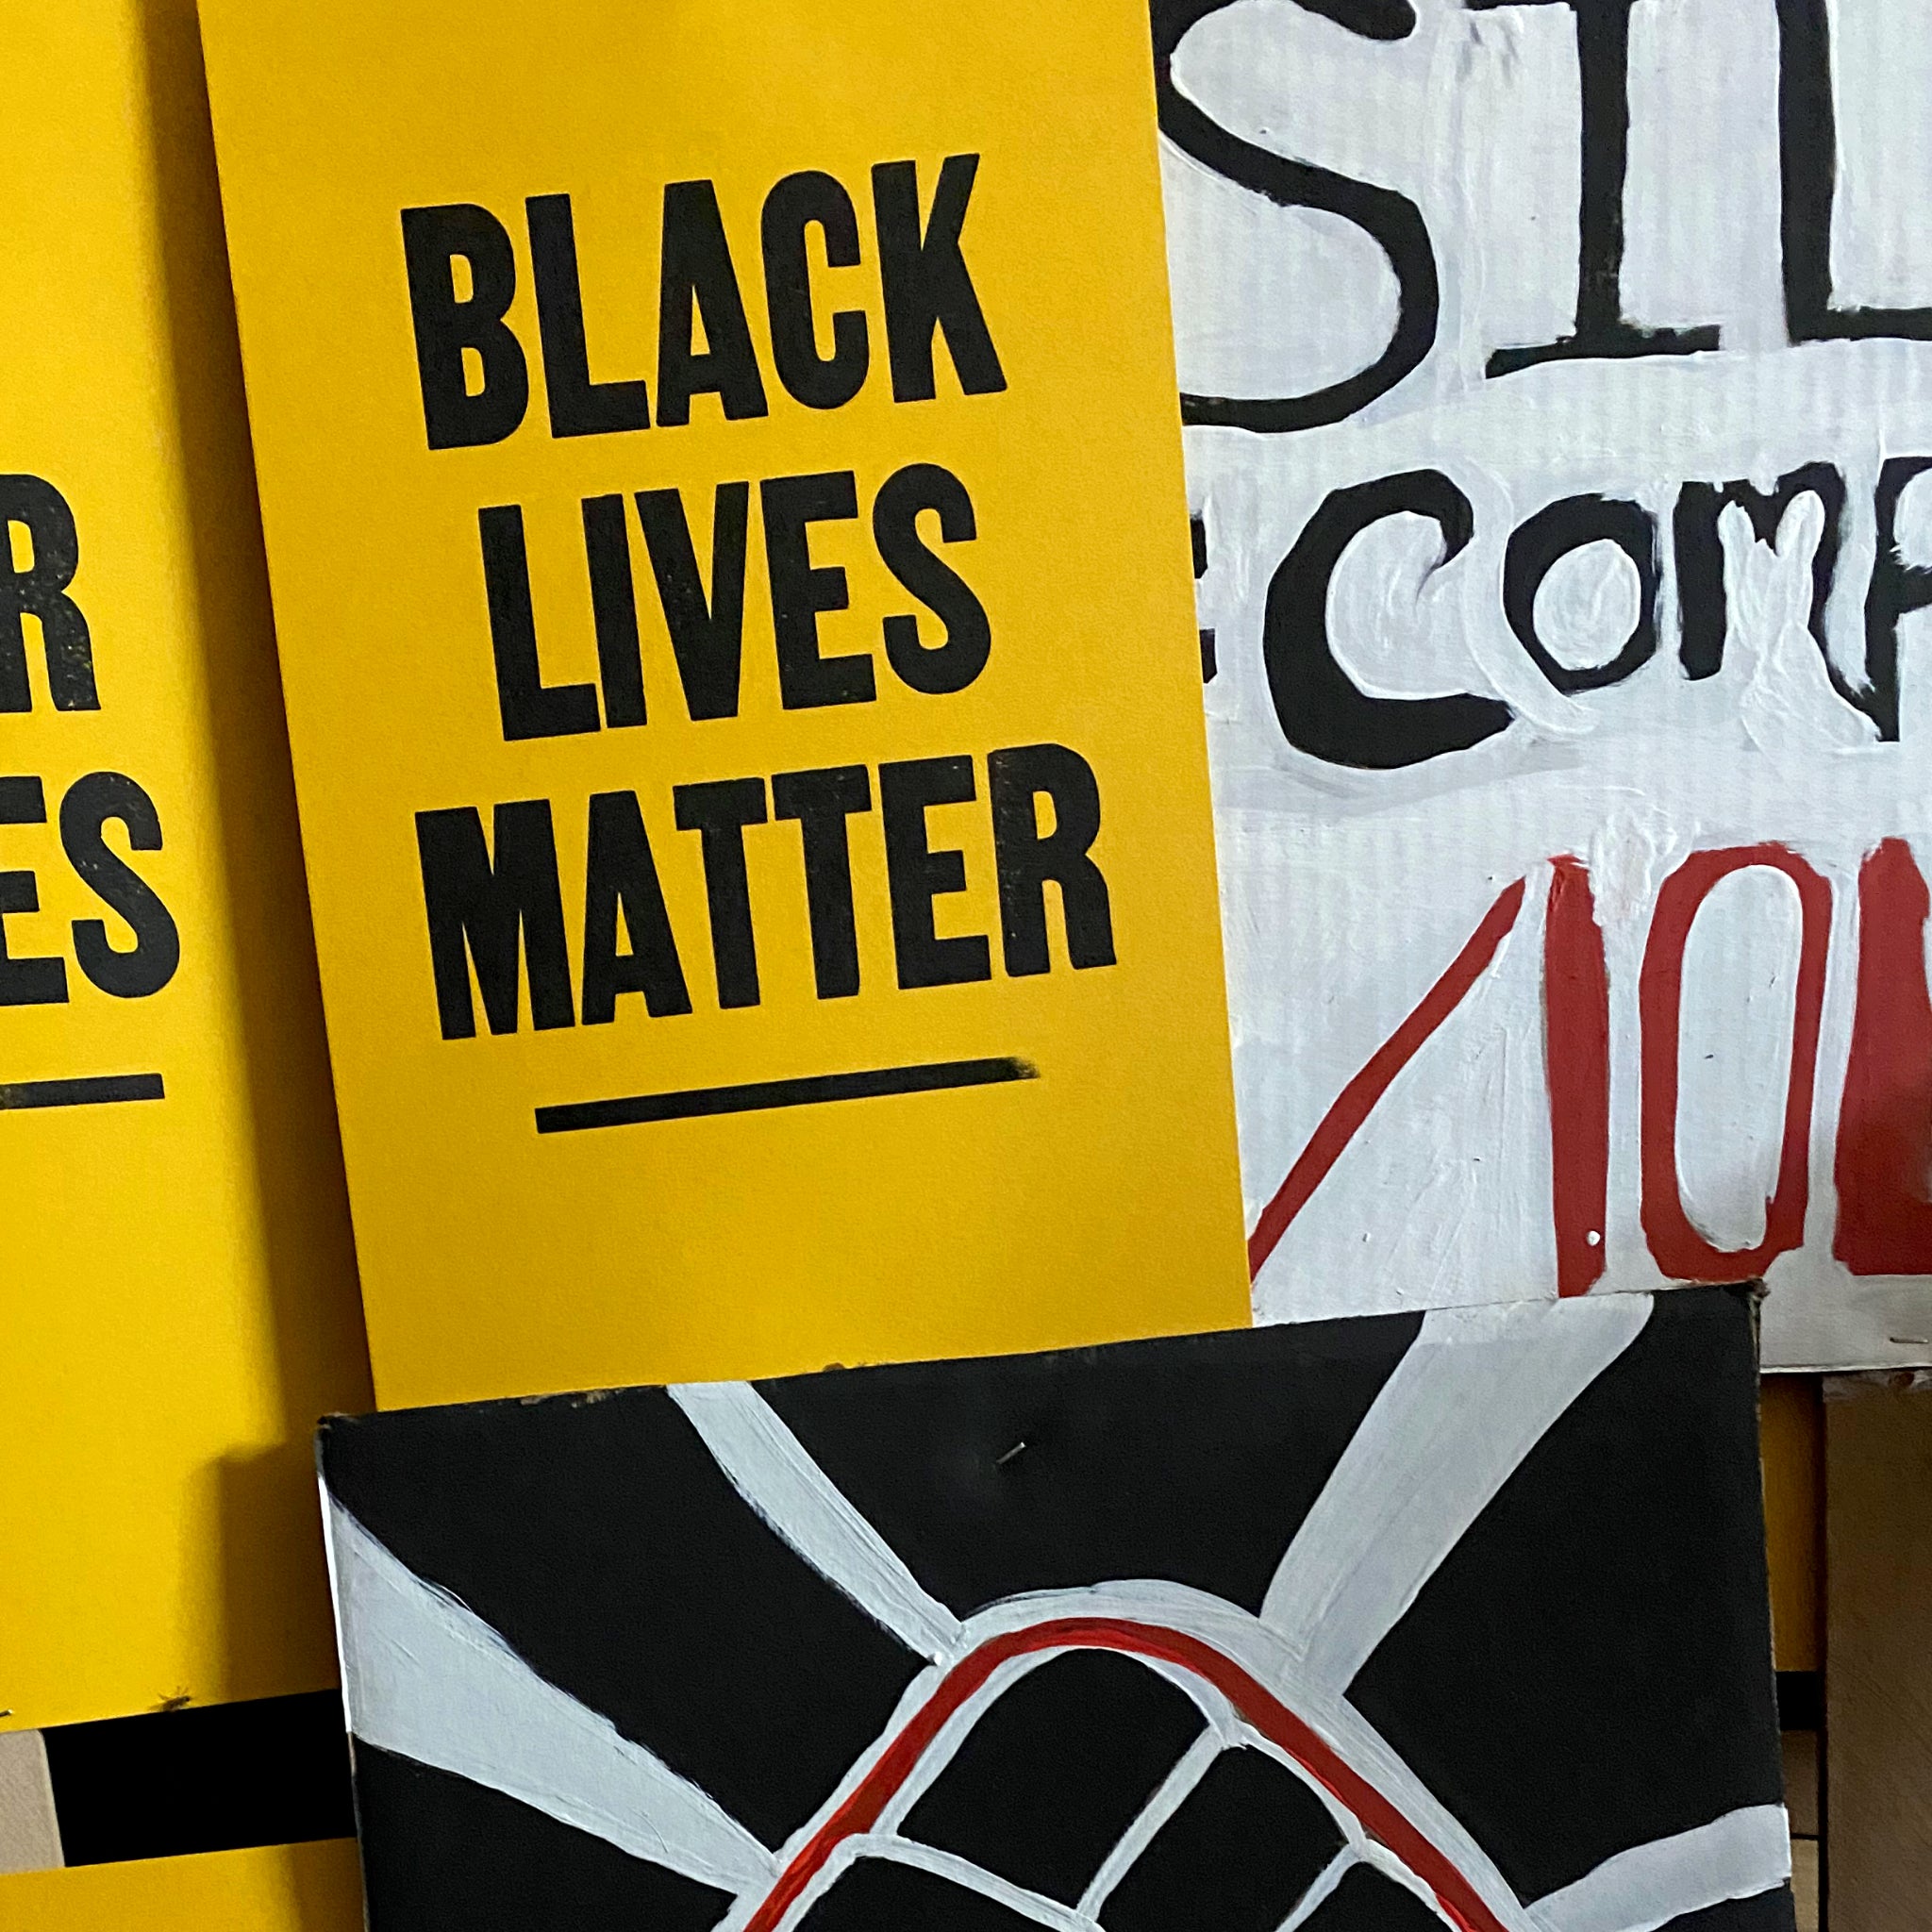 Black Lives Matter poster